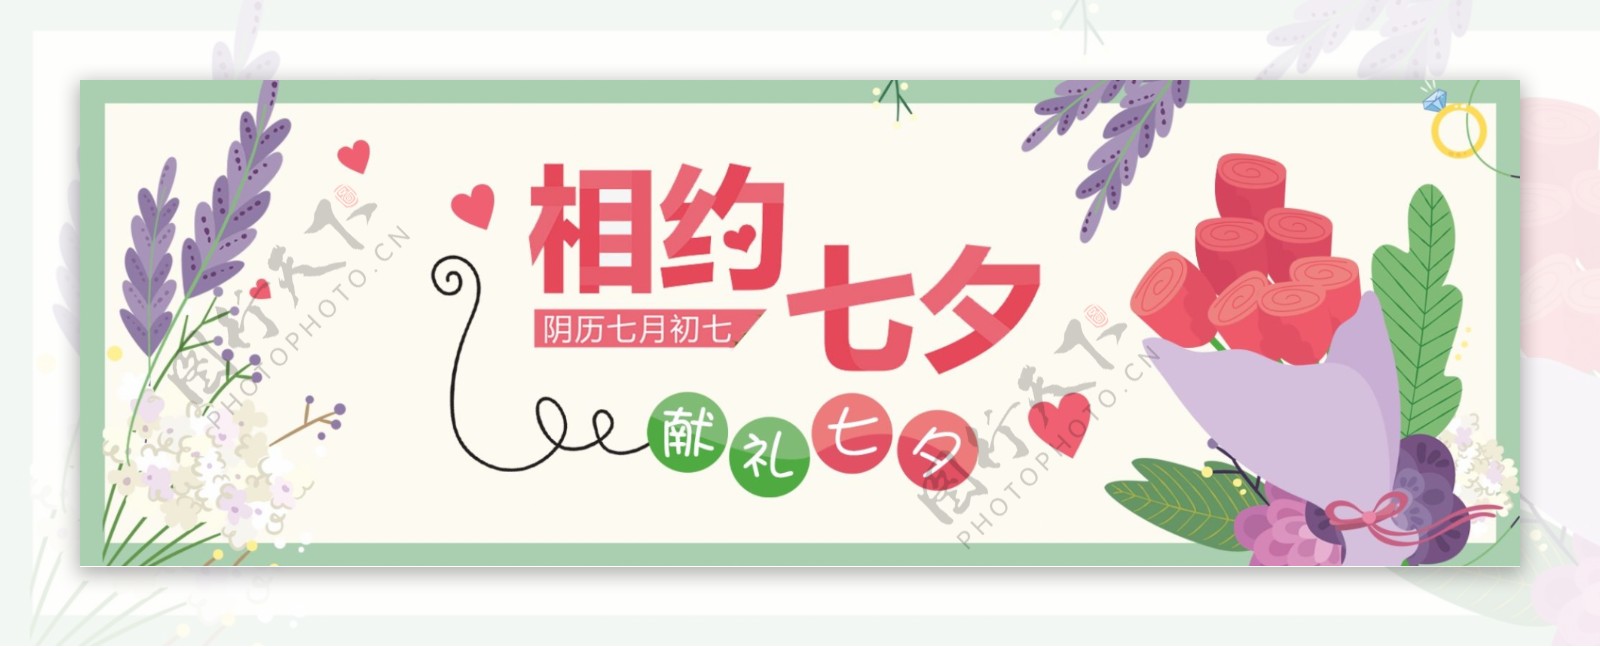 电商淘宝天猫七夕情人节促销海报通用banner模板